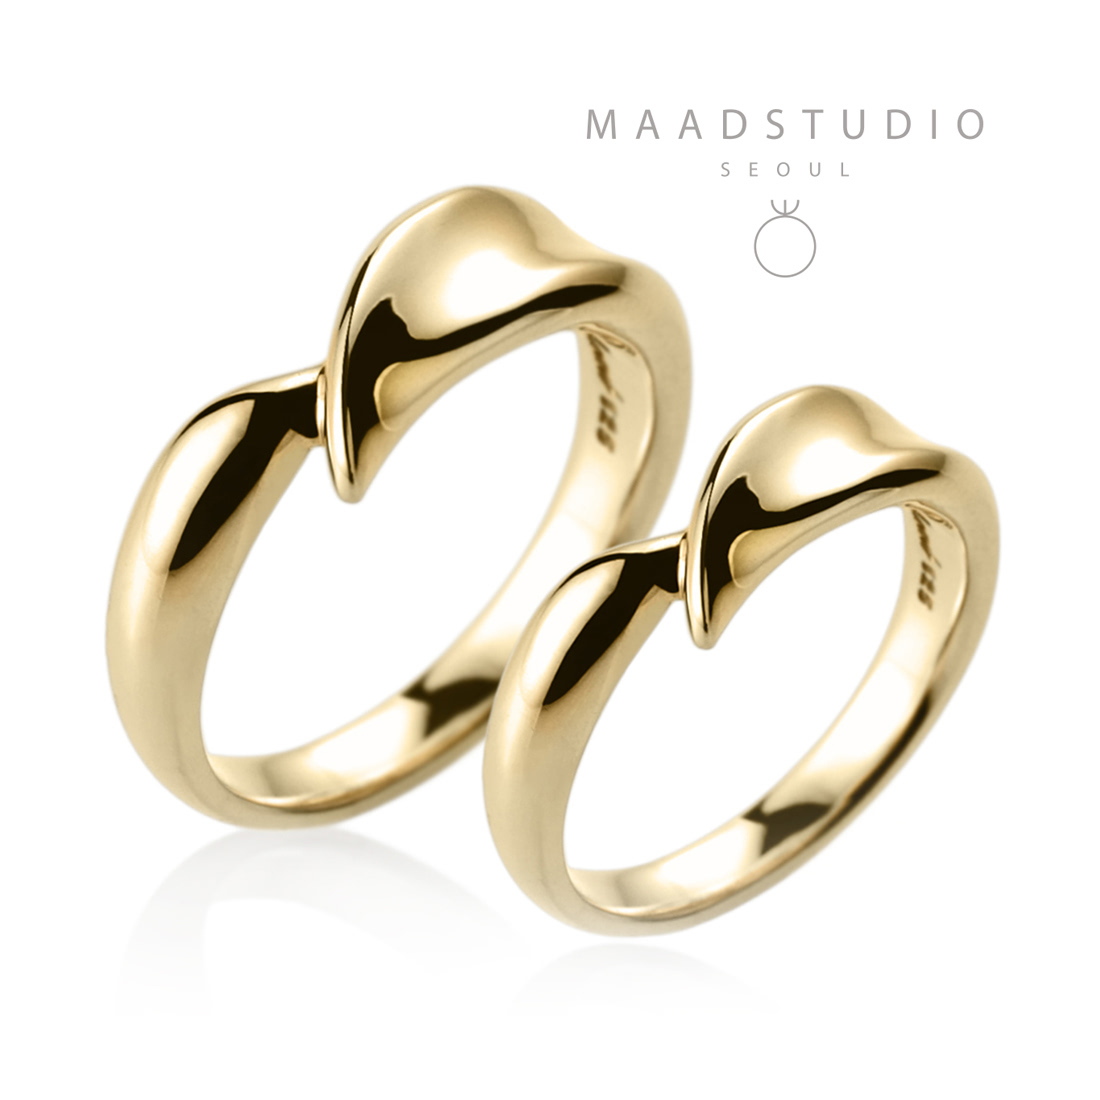 Willow leaf wedding ring Set (M&S) 14k gold